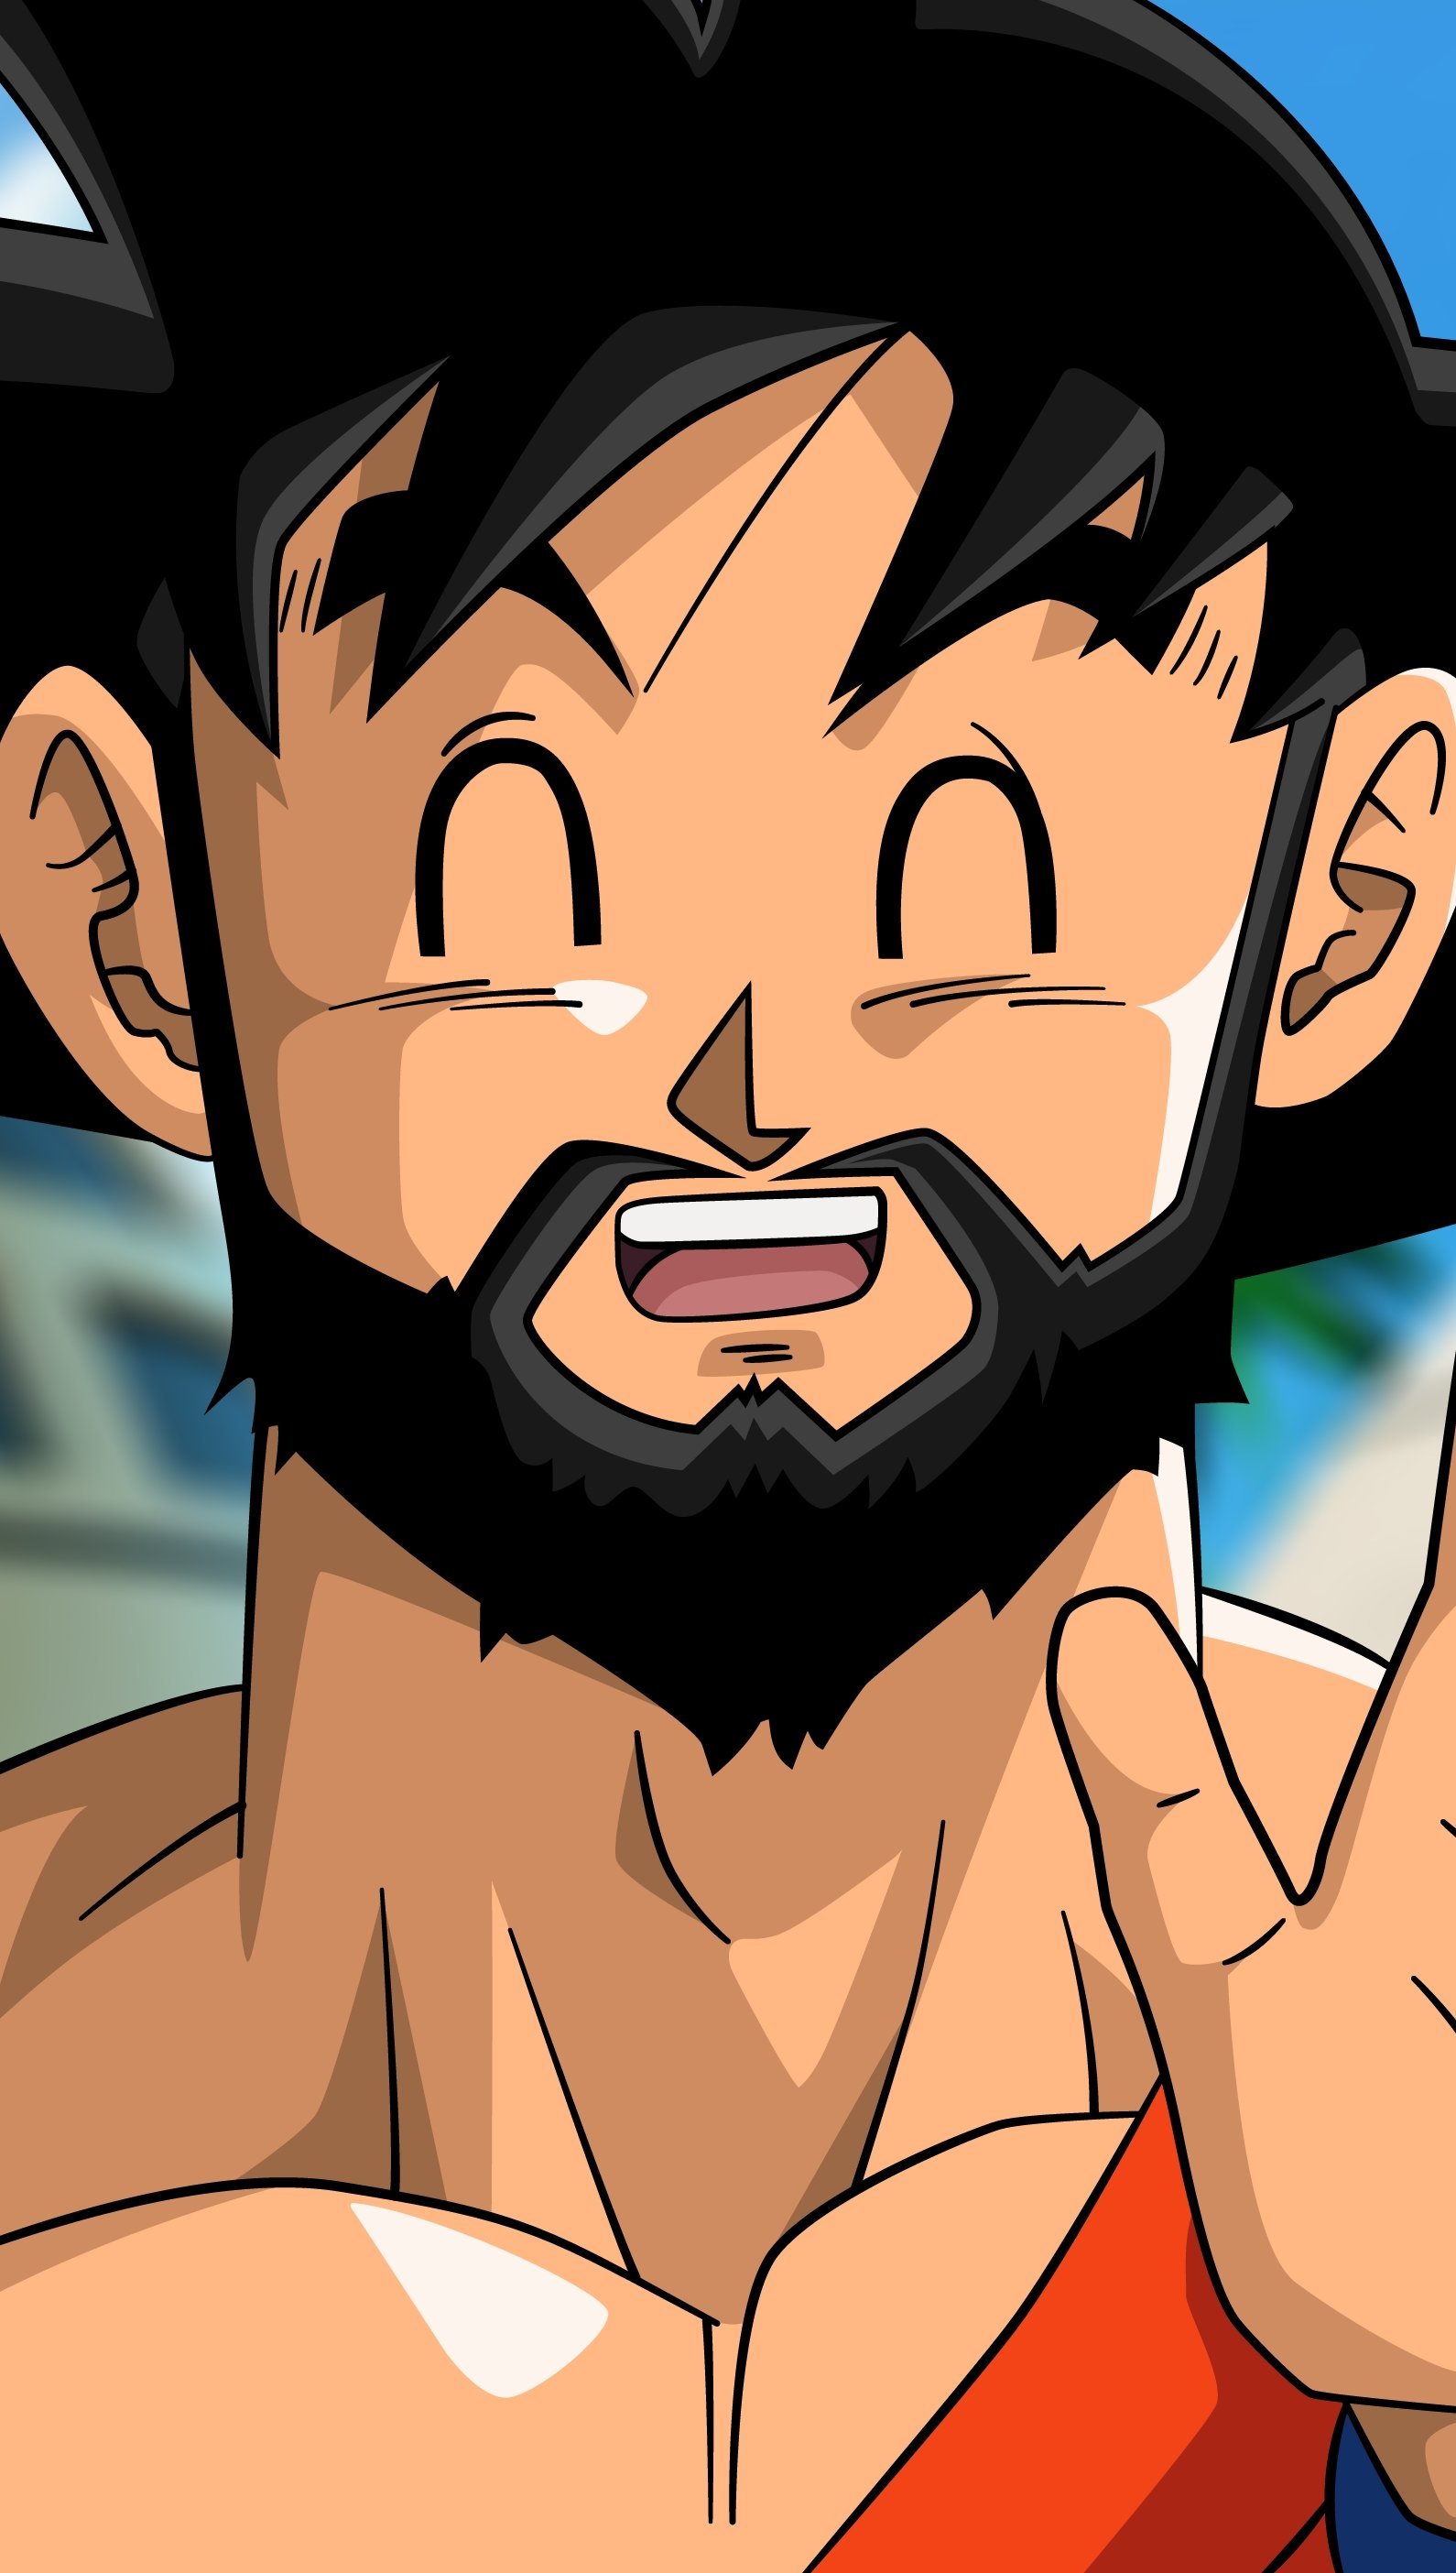 Fondos de pantalla Anime Goku Vegeta con barba Dragon Ball Vertical